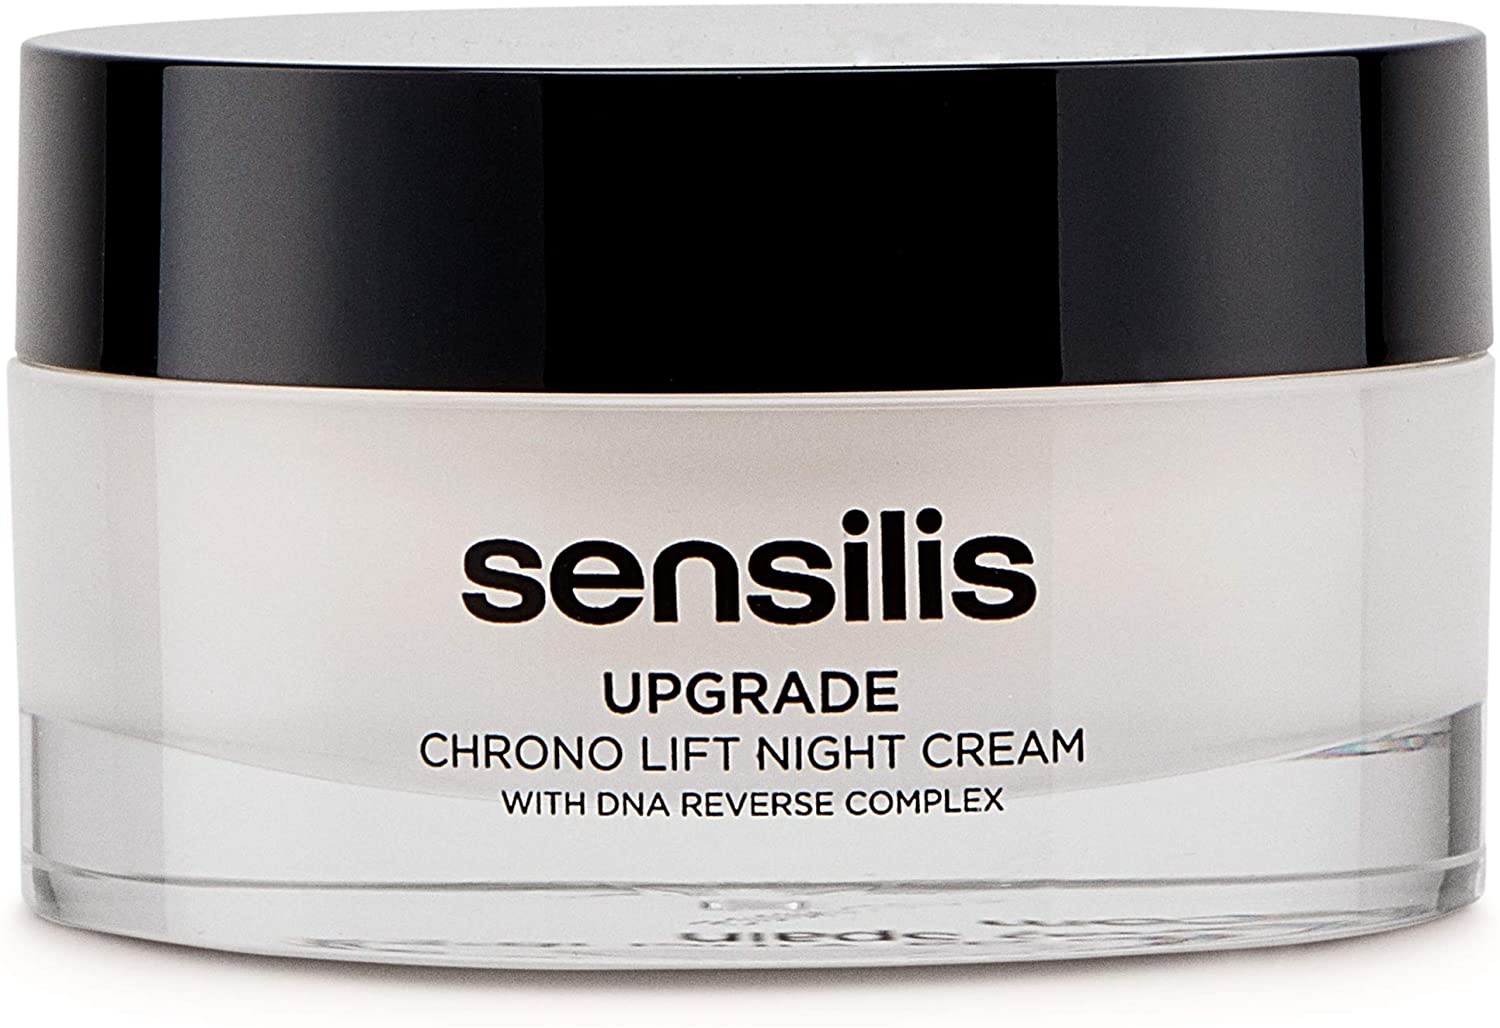 Sensilis Upgrade Night Cream